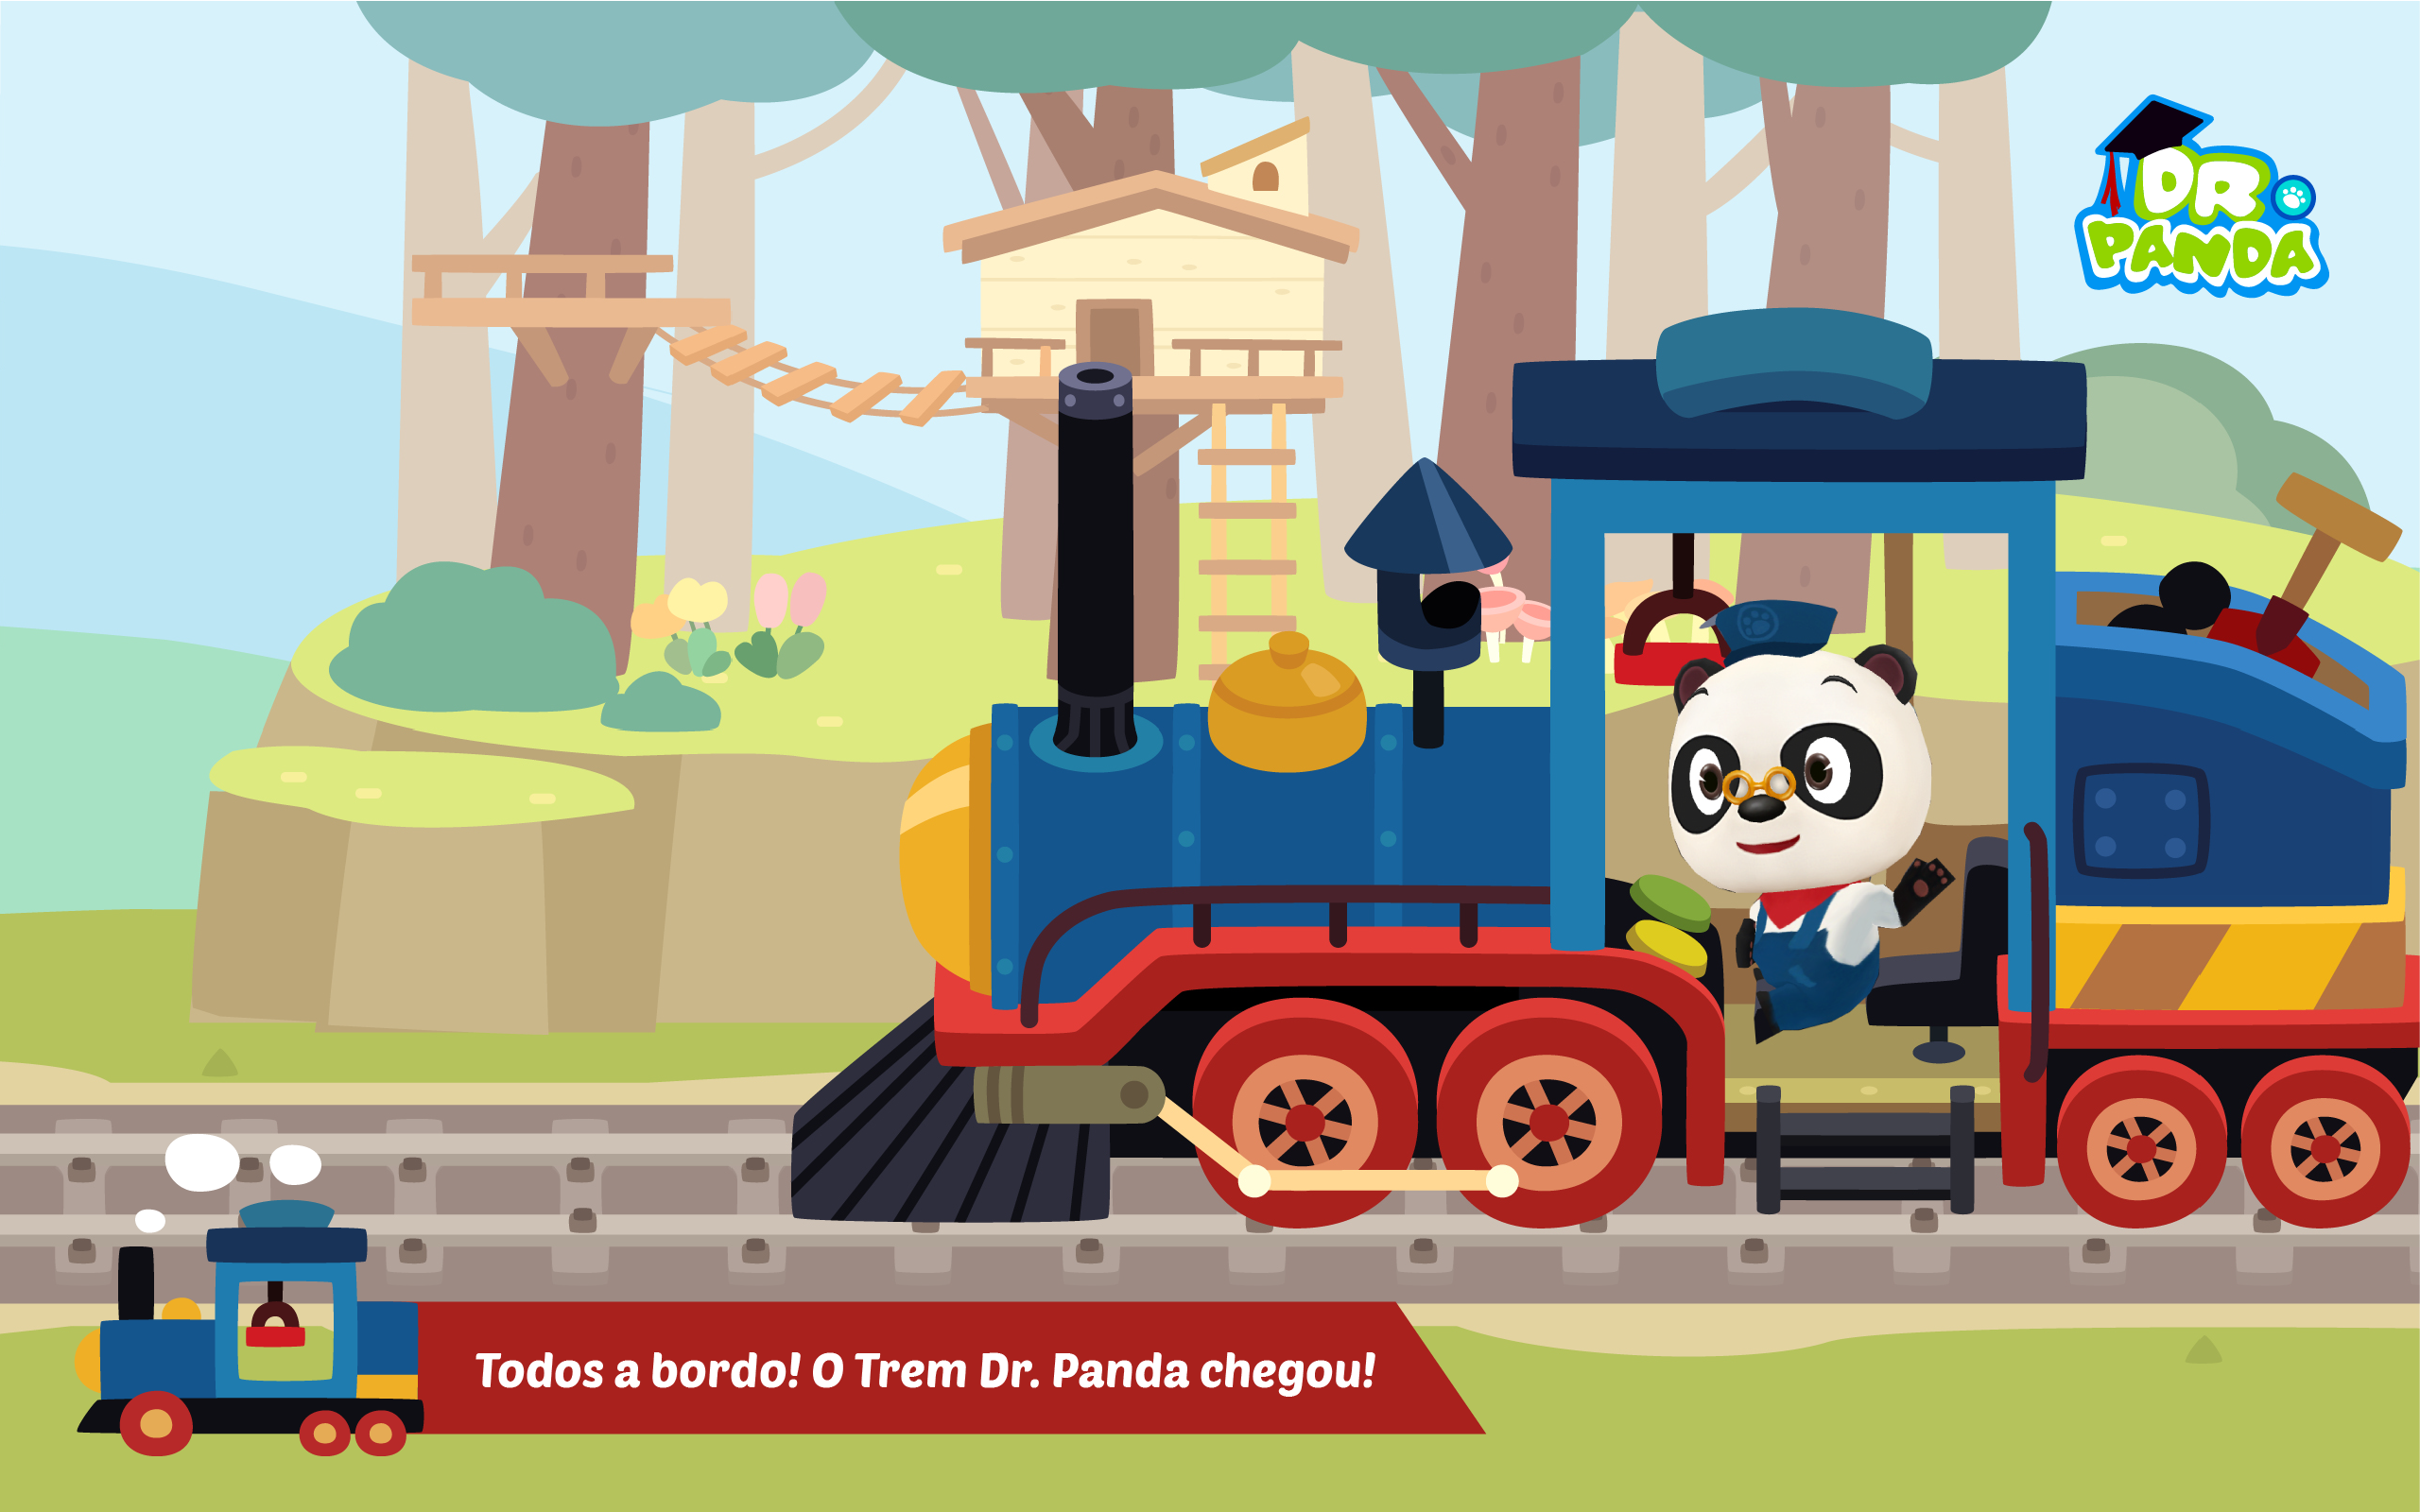 Screenshot 1 of Trem Dr. Panda 